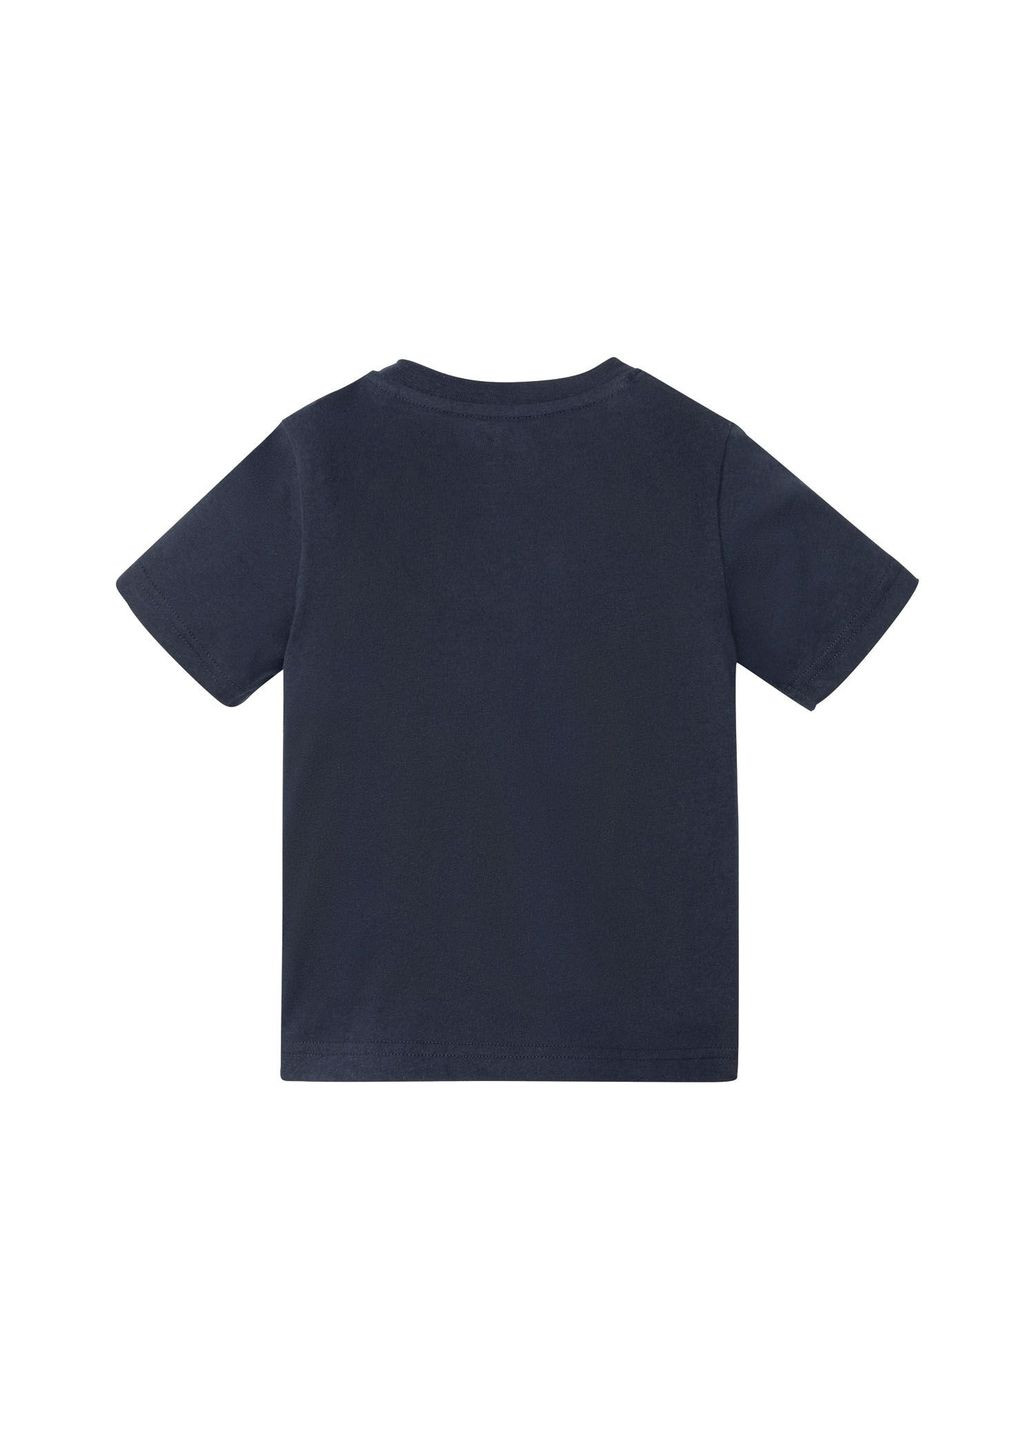 Темно-синяя пижама (футболка и шорты) для мальчика 349607 Lupilu